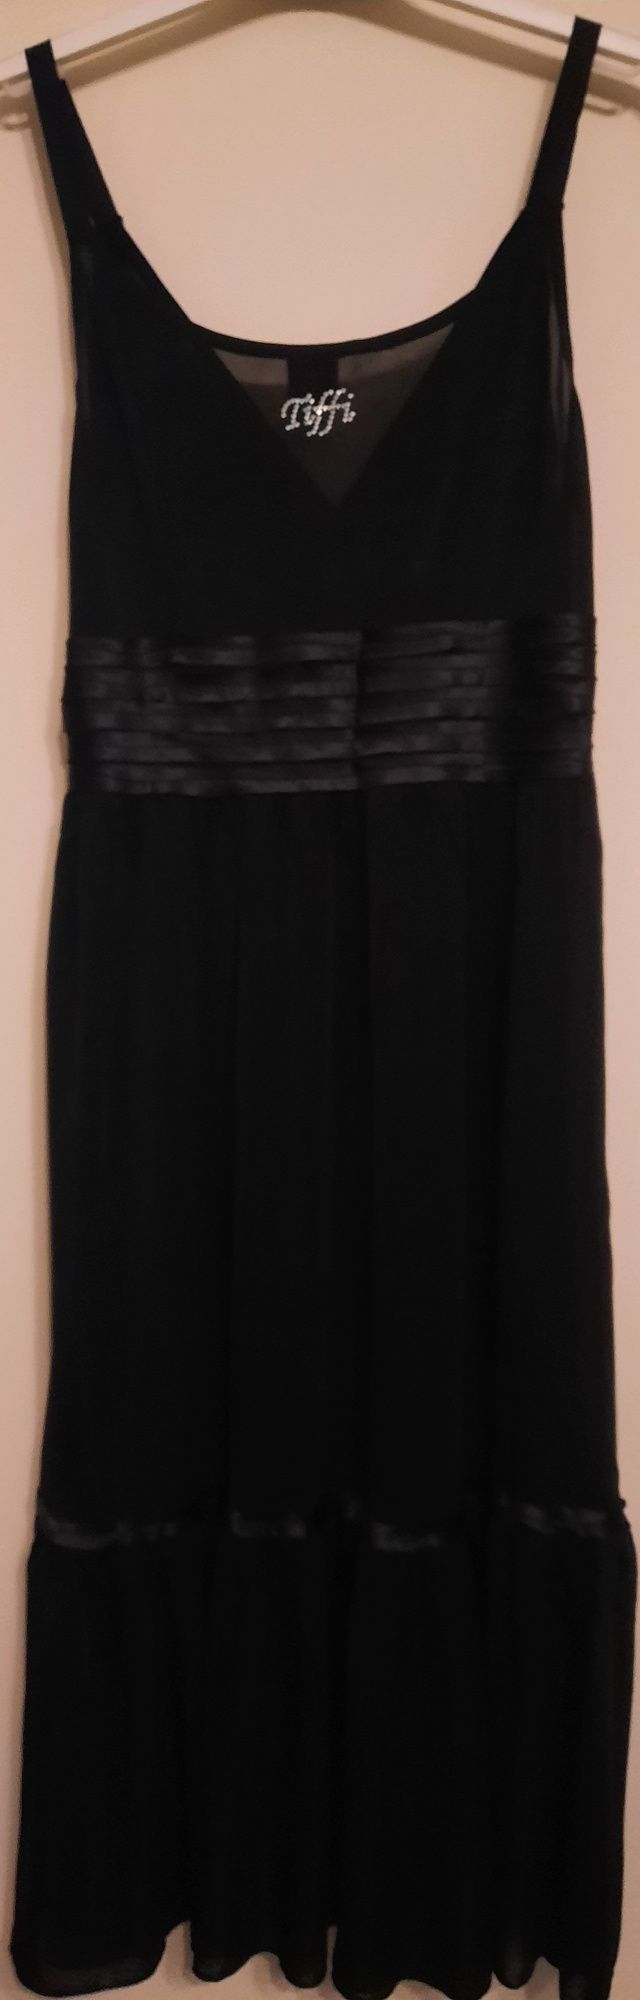 Czarna sukienka Tiffi